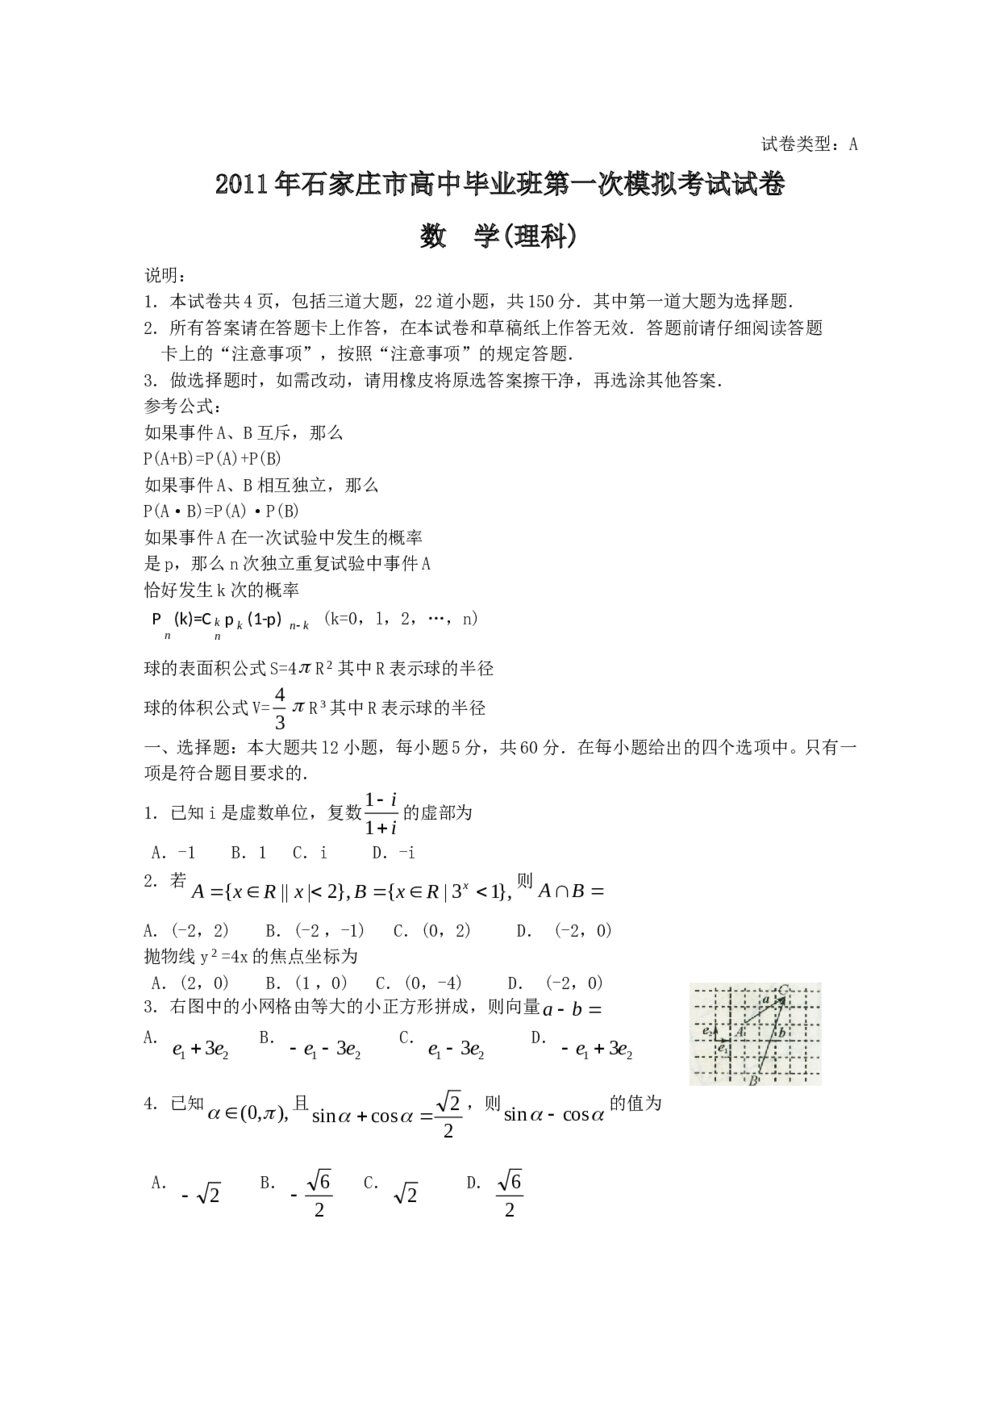 2011年石家庄高三一模拟数学(理科)试题试卷+答案1